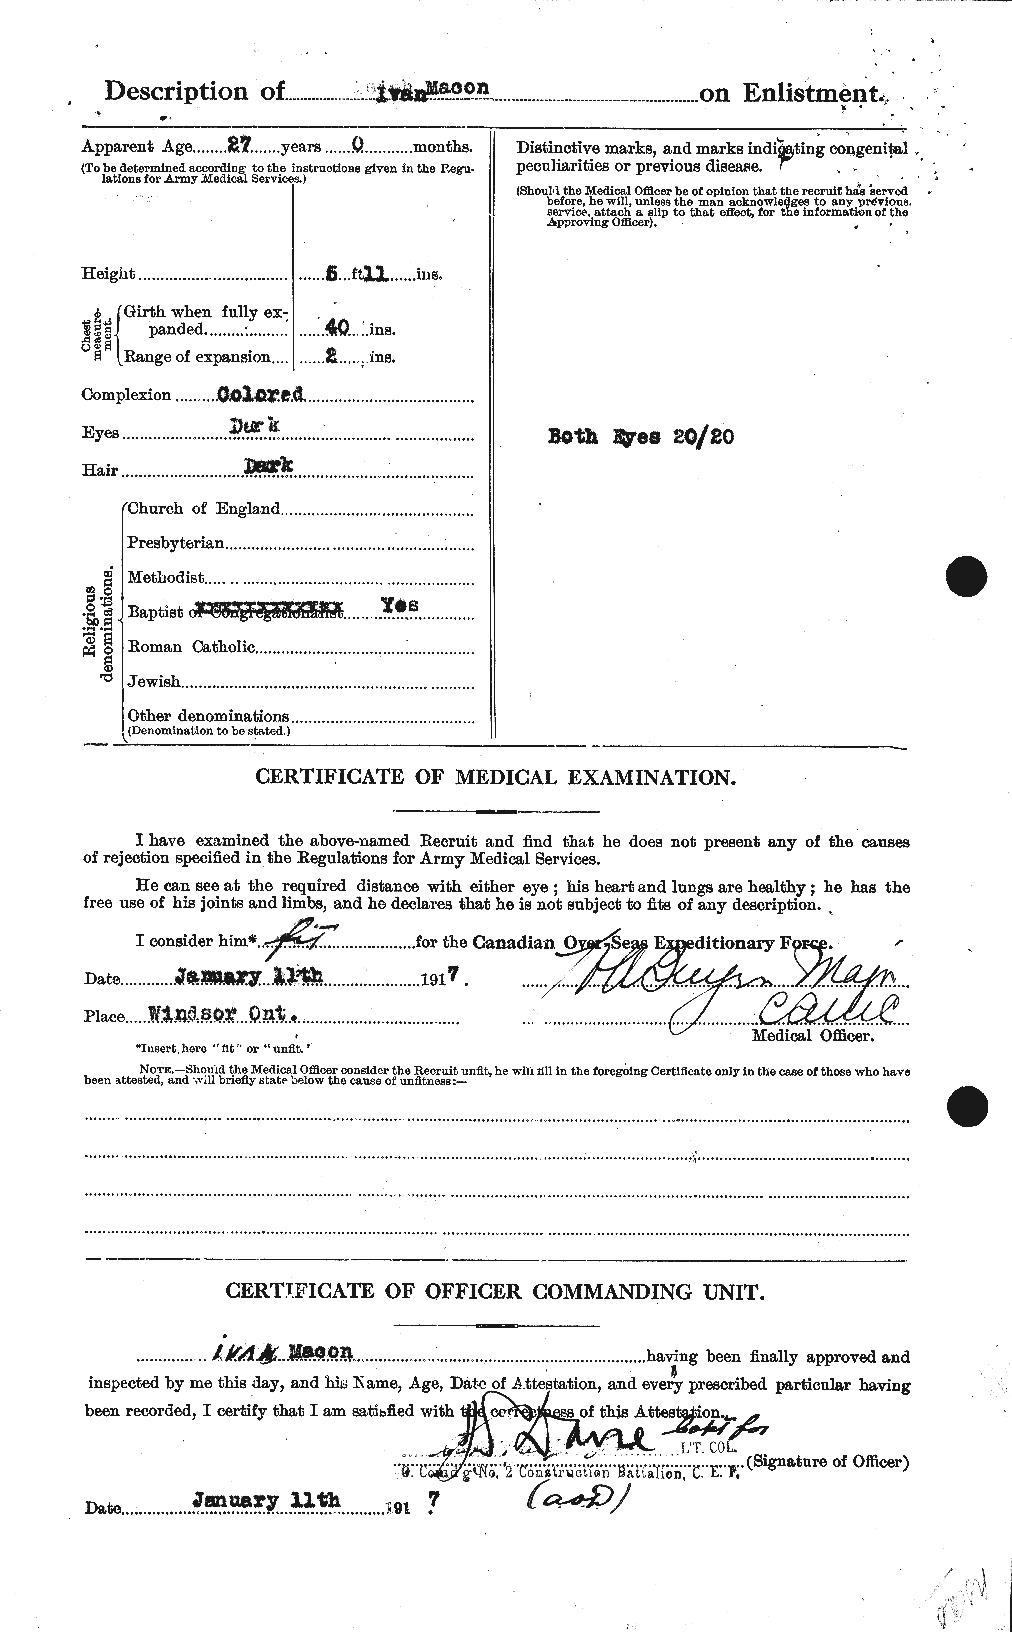 Dossiers du Personnel de la Première Guerre mondiale - CEC 476455b